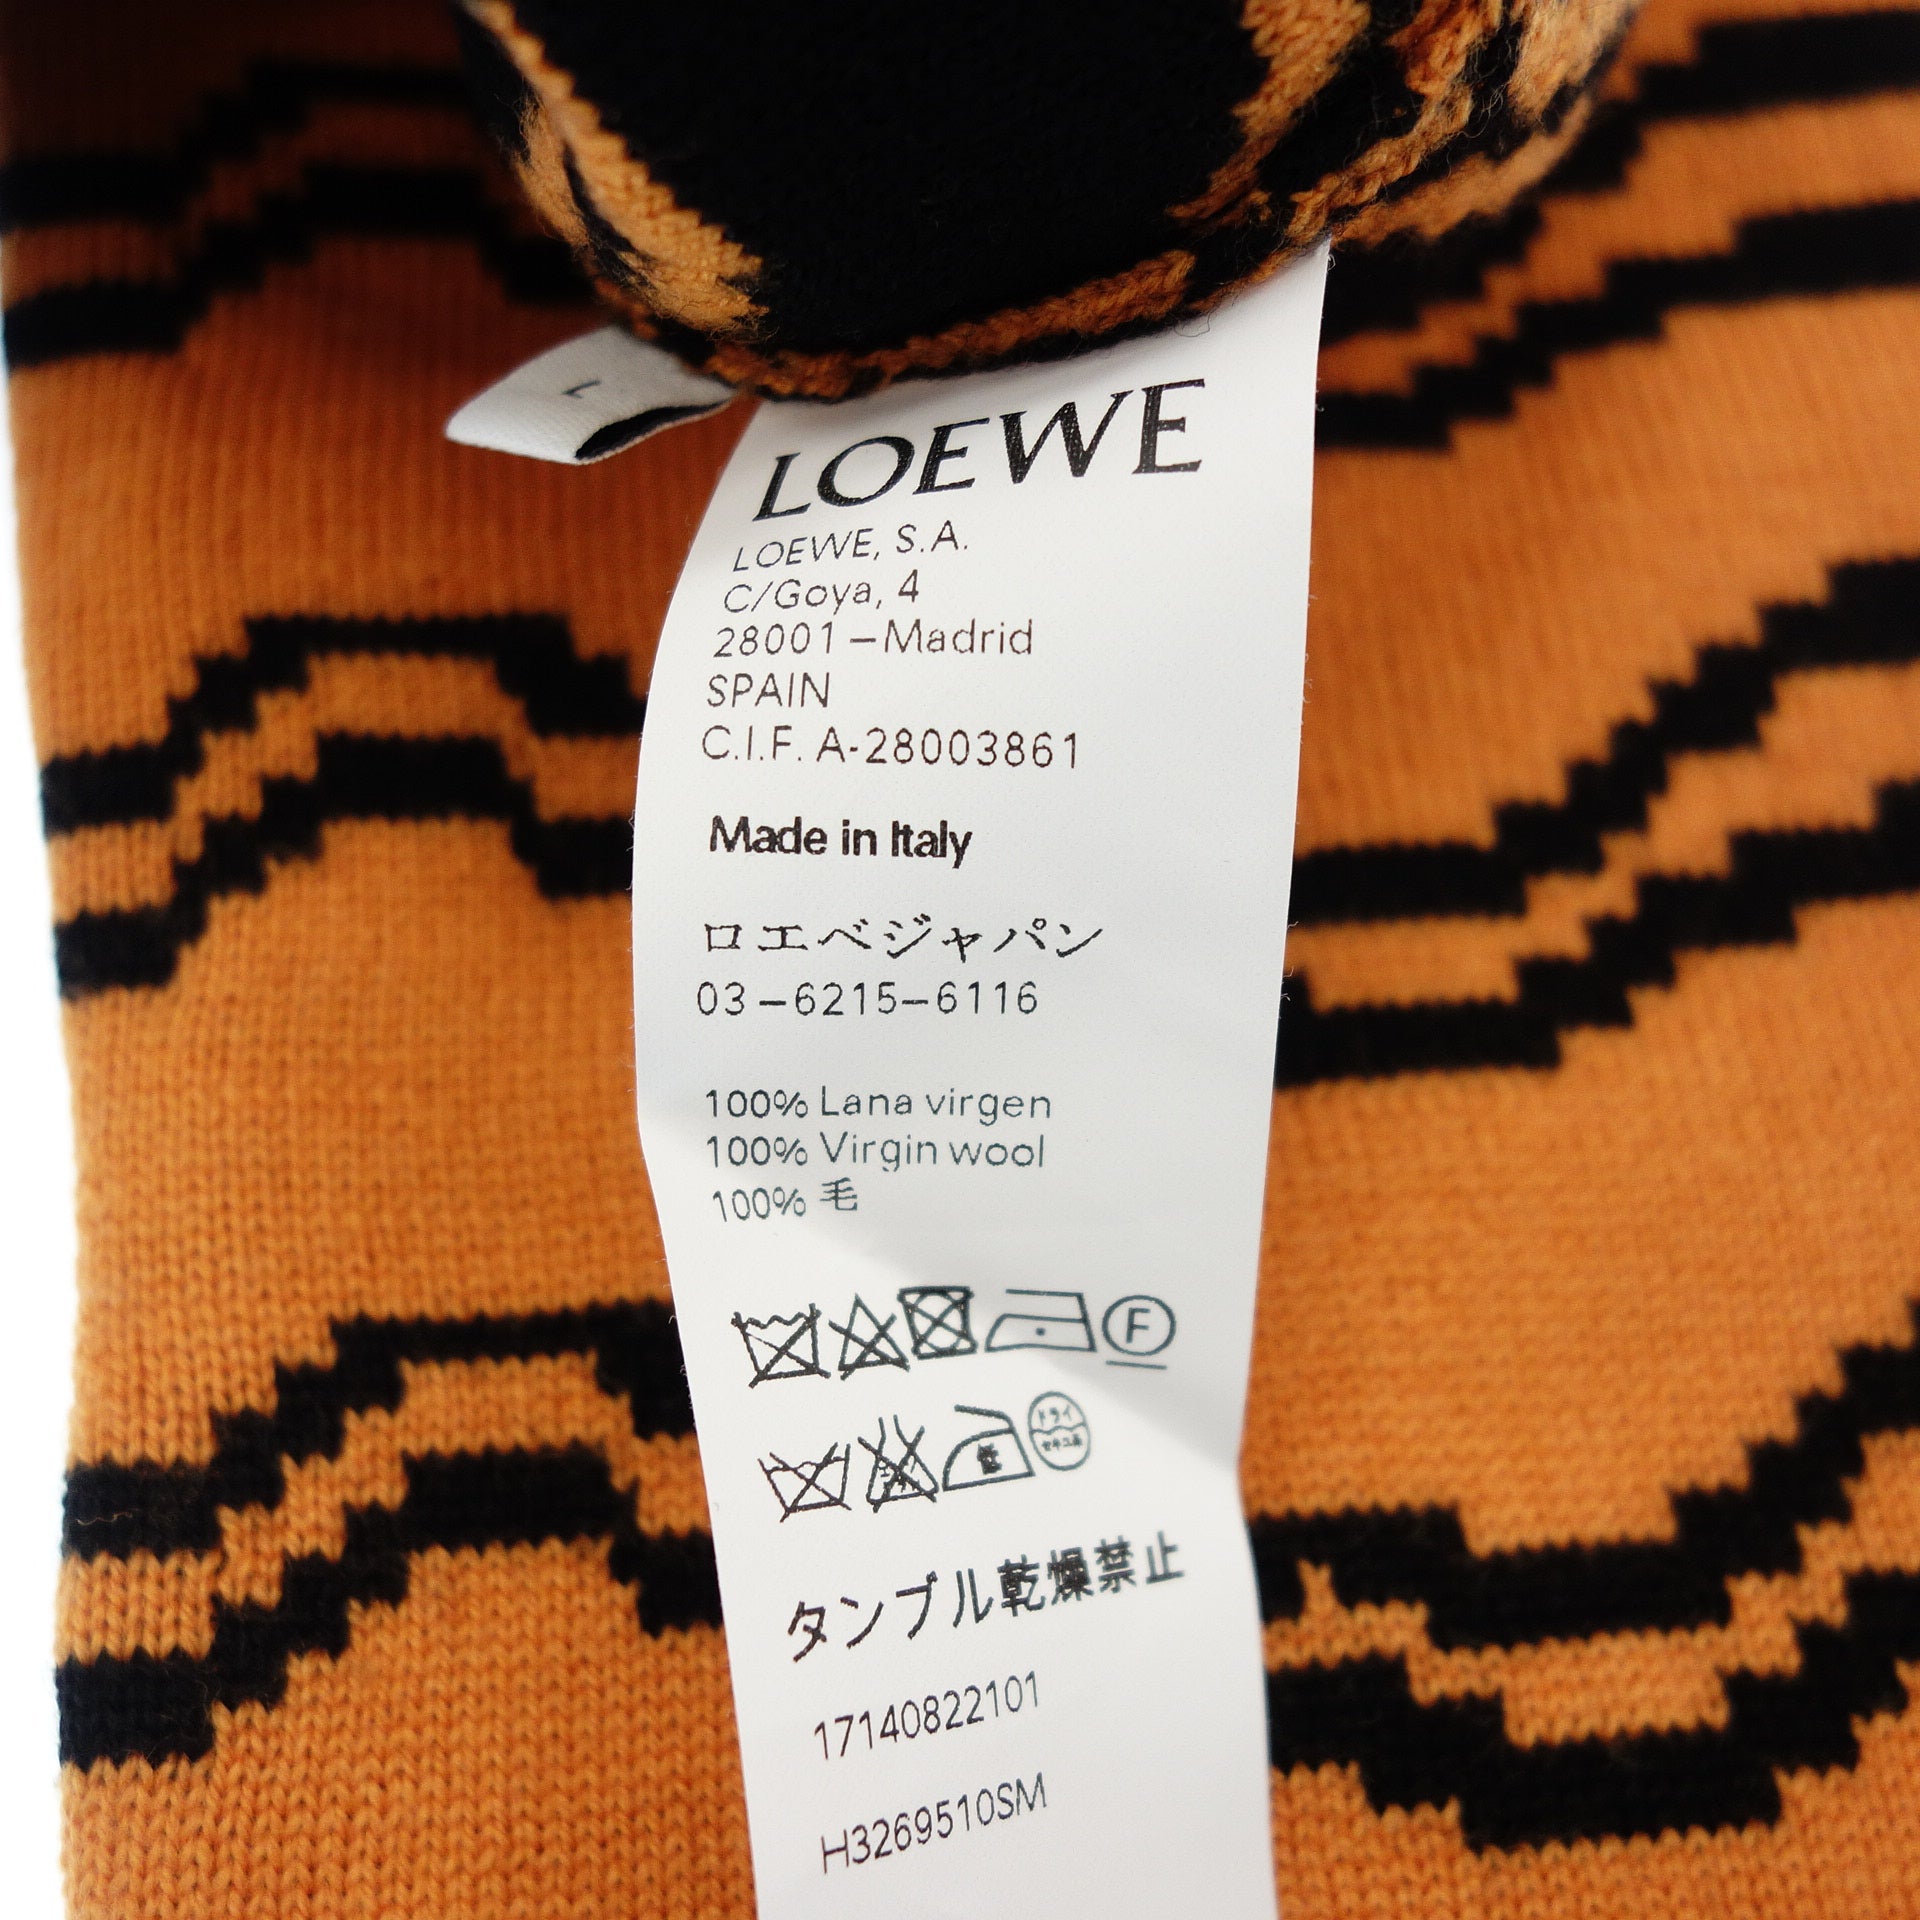 21,499円ロエベ LOEWE スペイン ニット タートルネック セーター オレンジ系